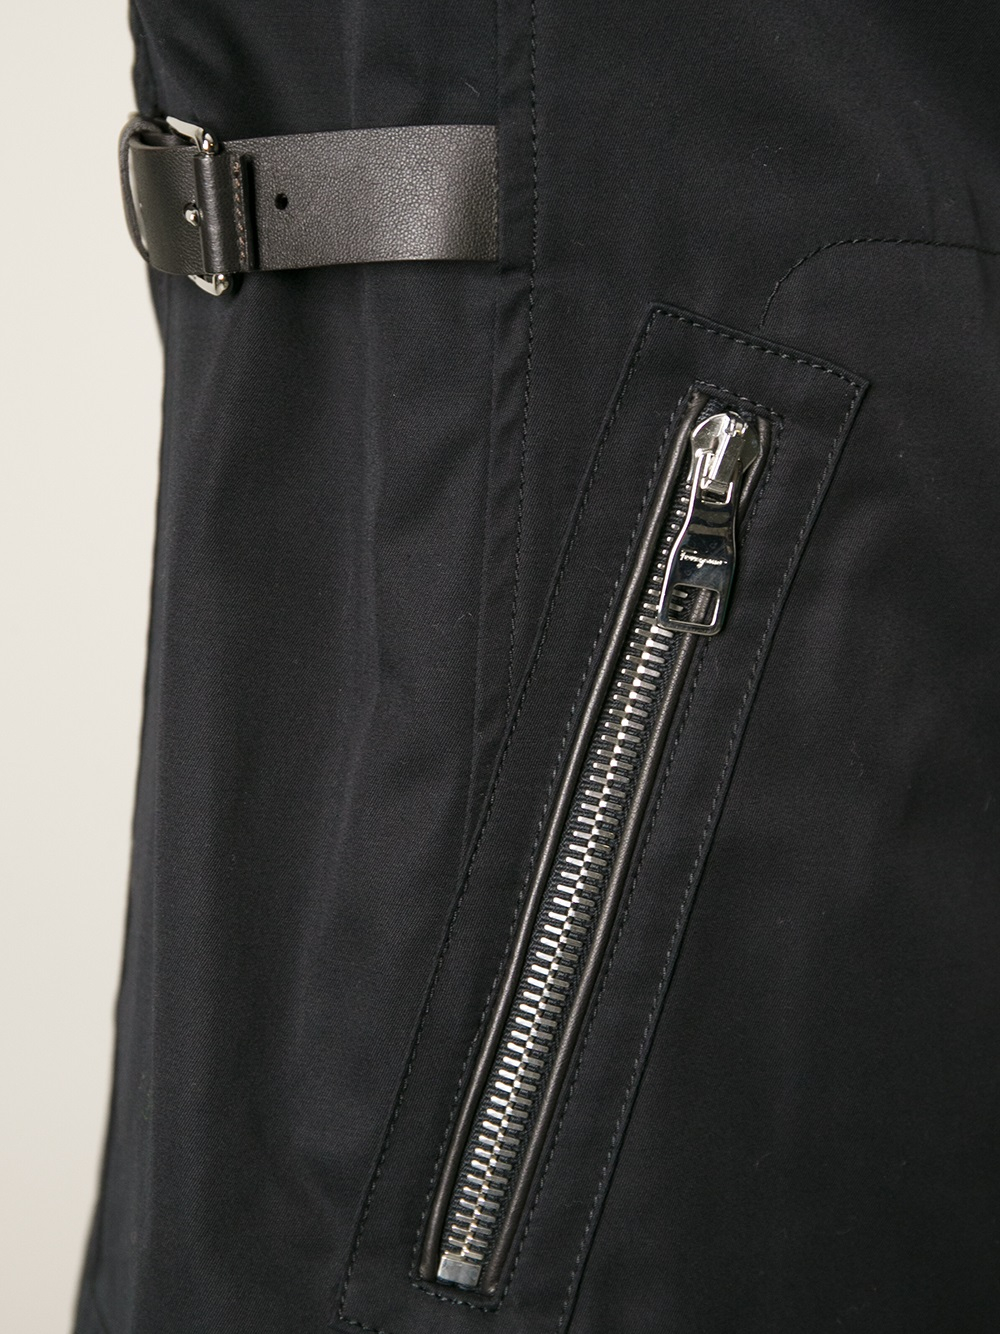 Lyst - Ferragamo Buckle Strap Jacket in Black for Men